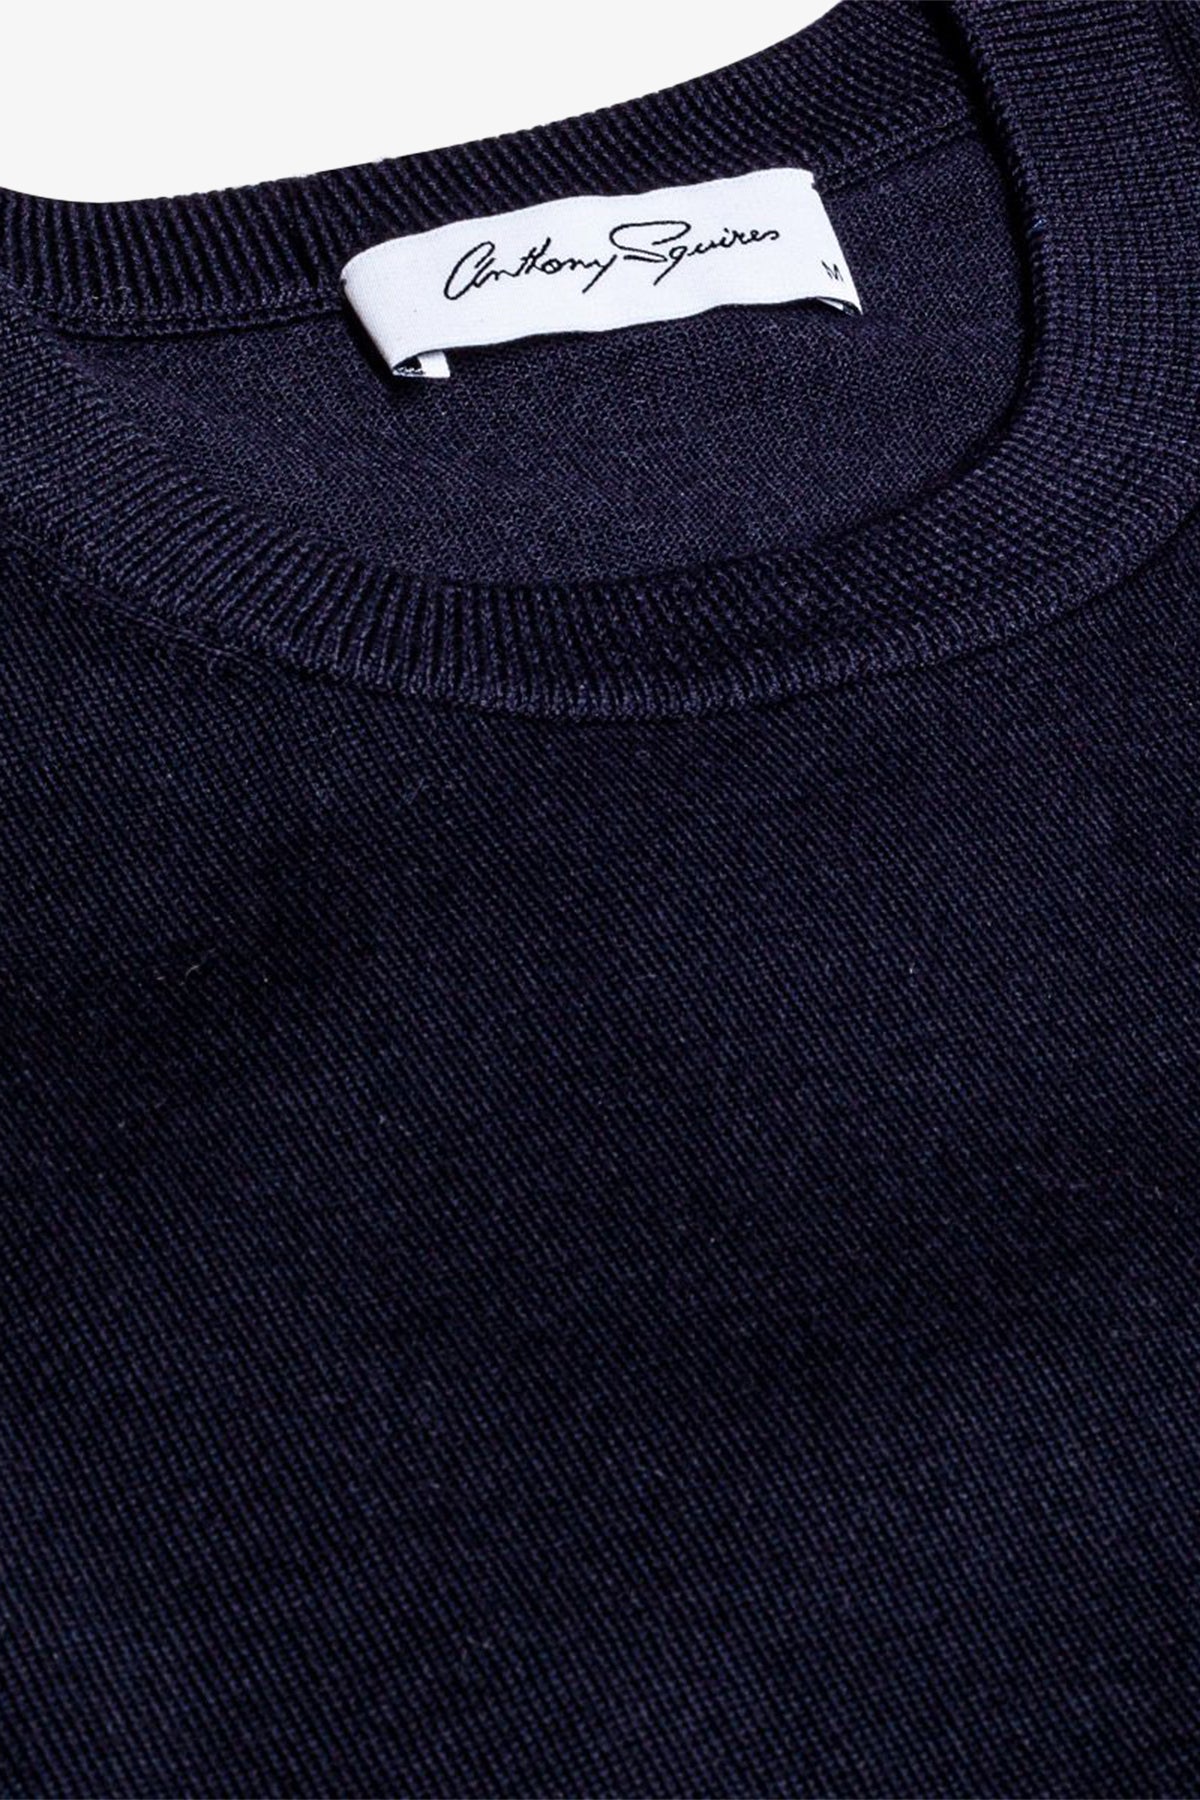 Amari - Navy Knitted T-shirt